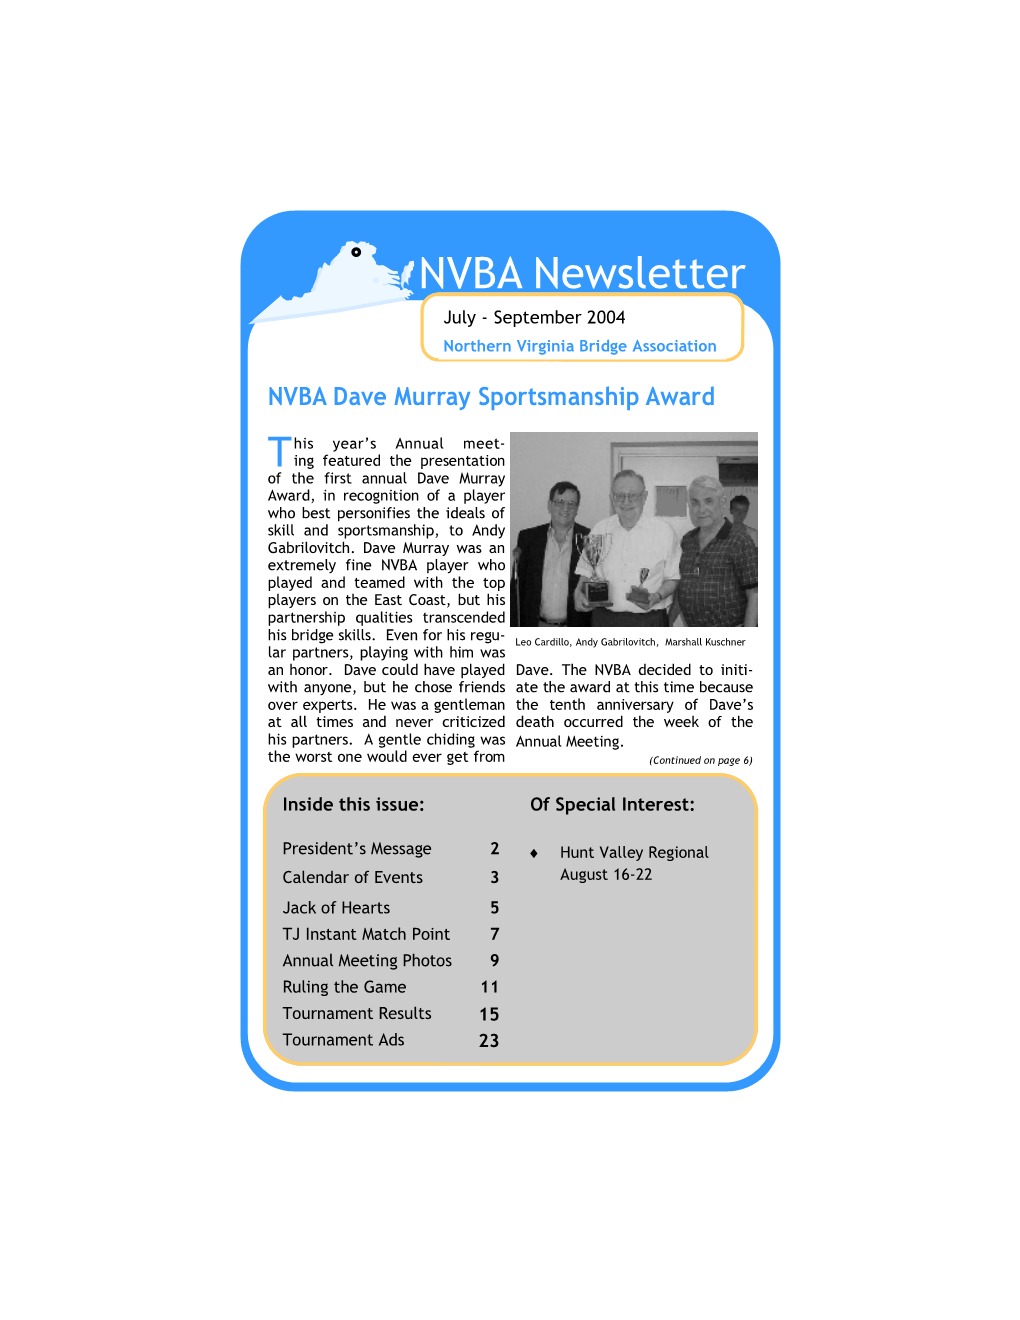 NVBA Newsletter Jul-Sep